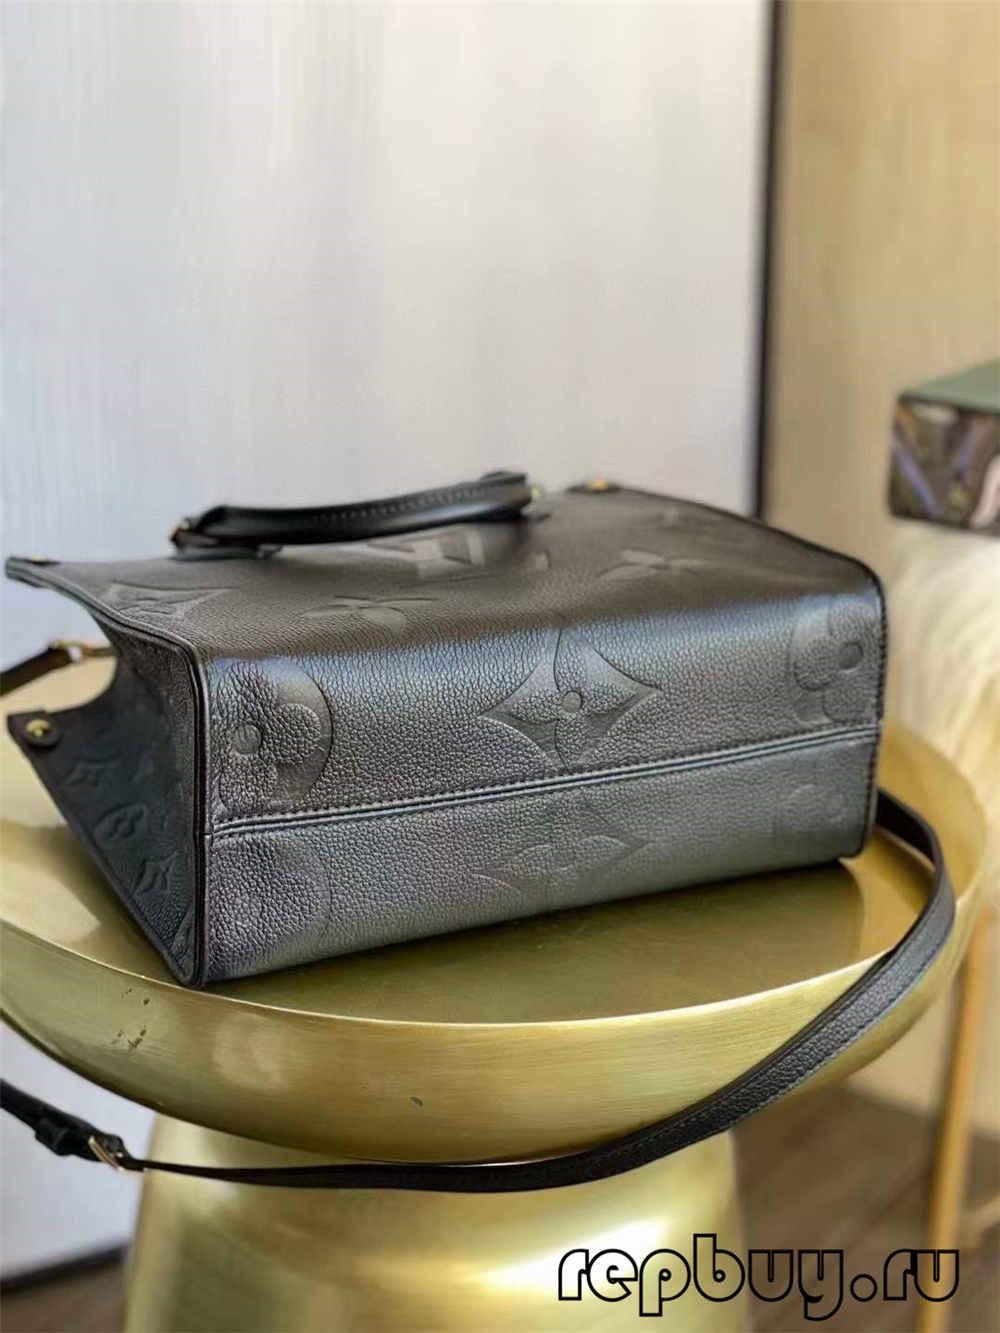 लुई व्हिटॉन ओन्थेगो एम४५६५३ सर्वोत्तम दर्जाची प्रतिकृती बॅग (२०२२ अद्यतनित)-Best Quality Fake Louis Vuitton Bag Online Store, Replica designer bag ru